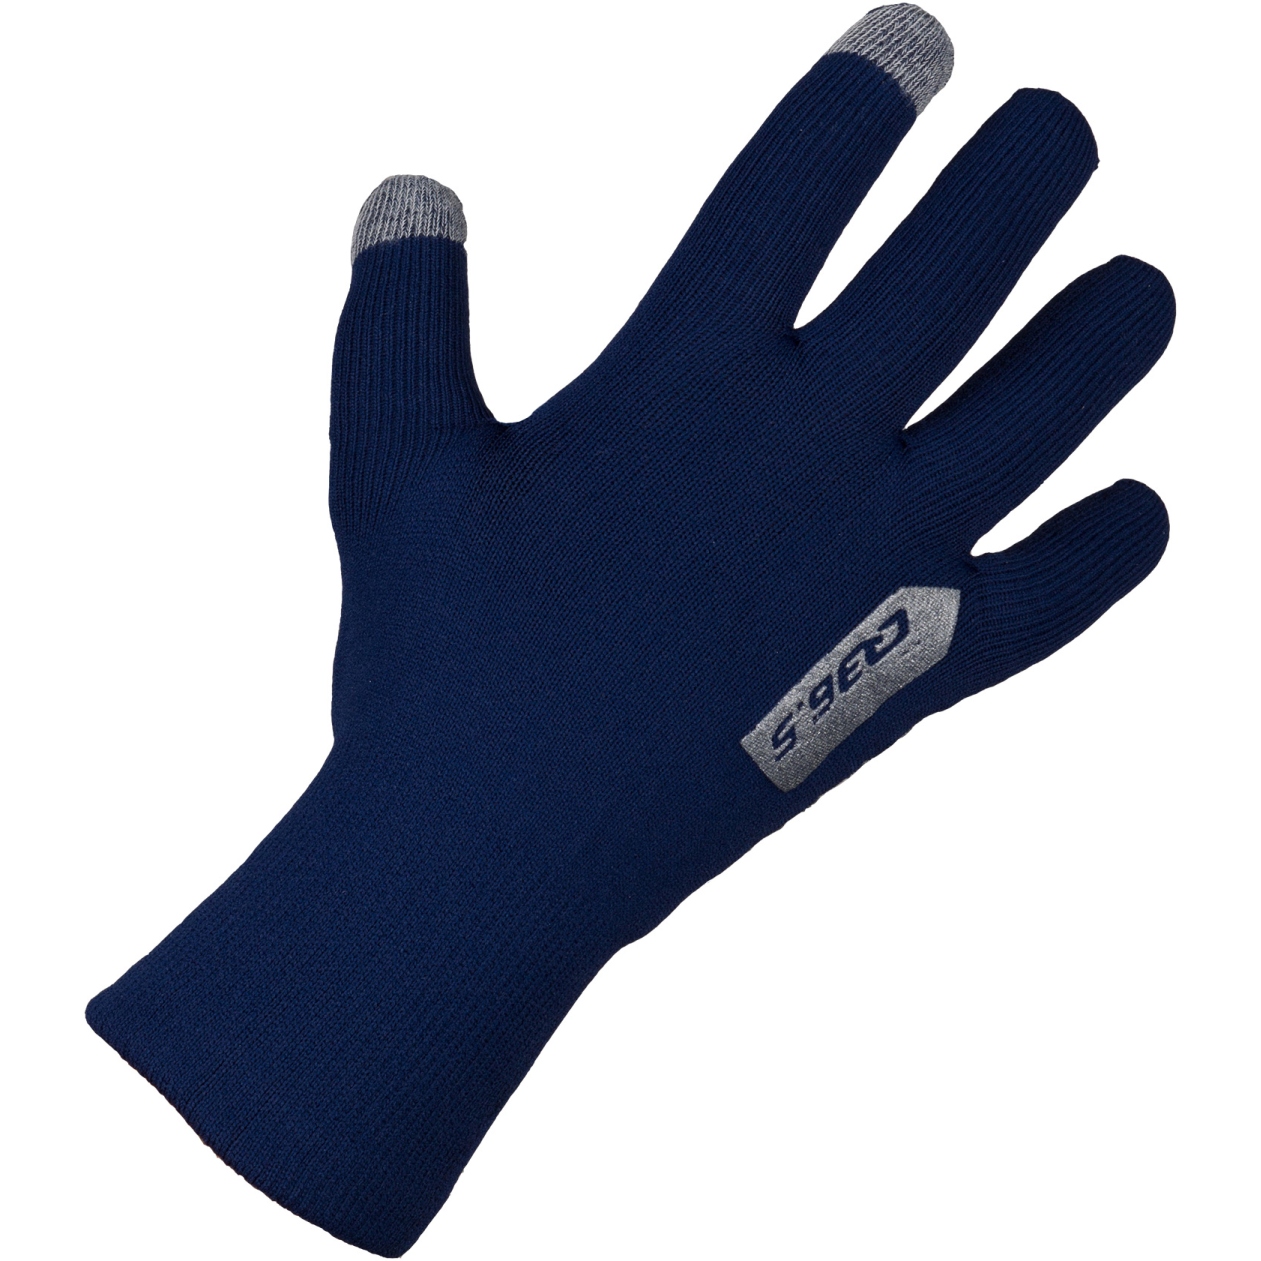 Produktbild von Q36.5 Anfibio Winter Regen Handschuhe - navy